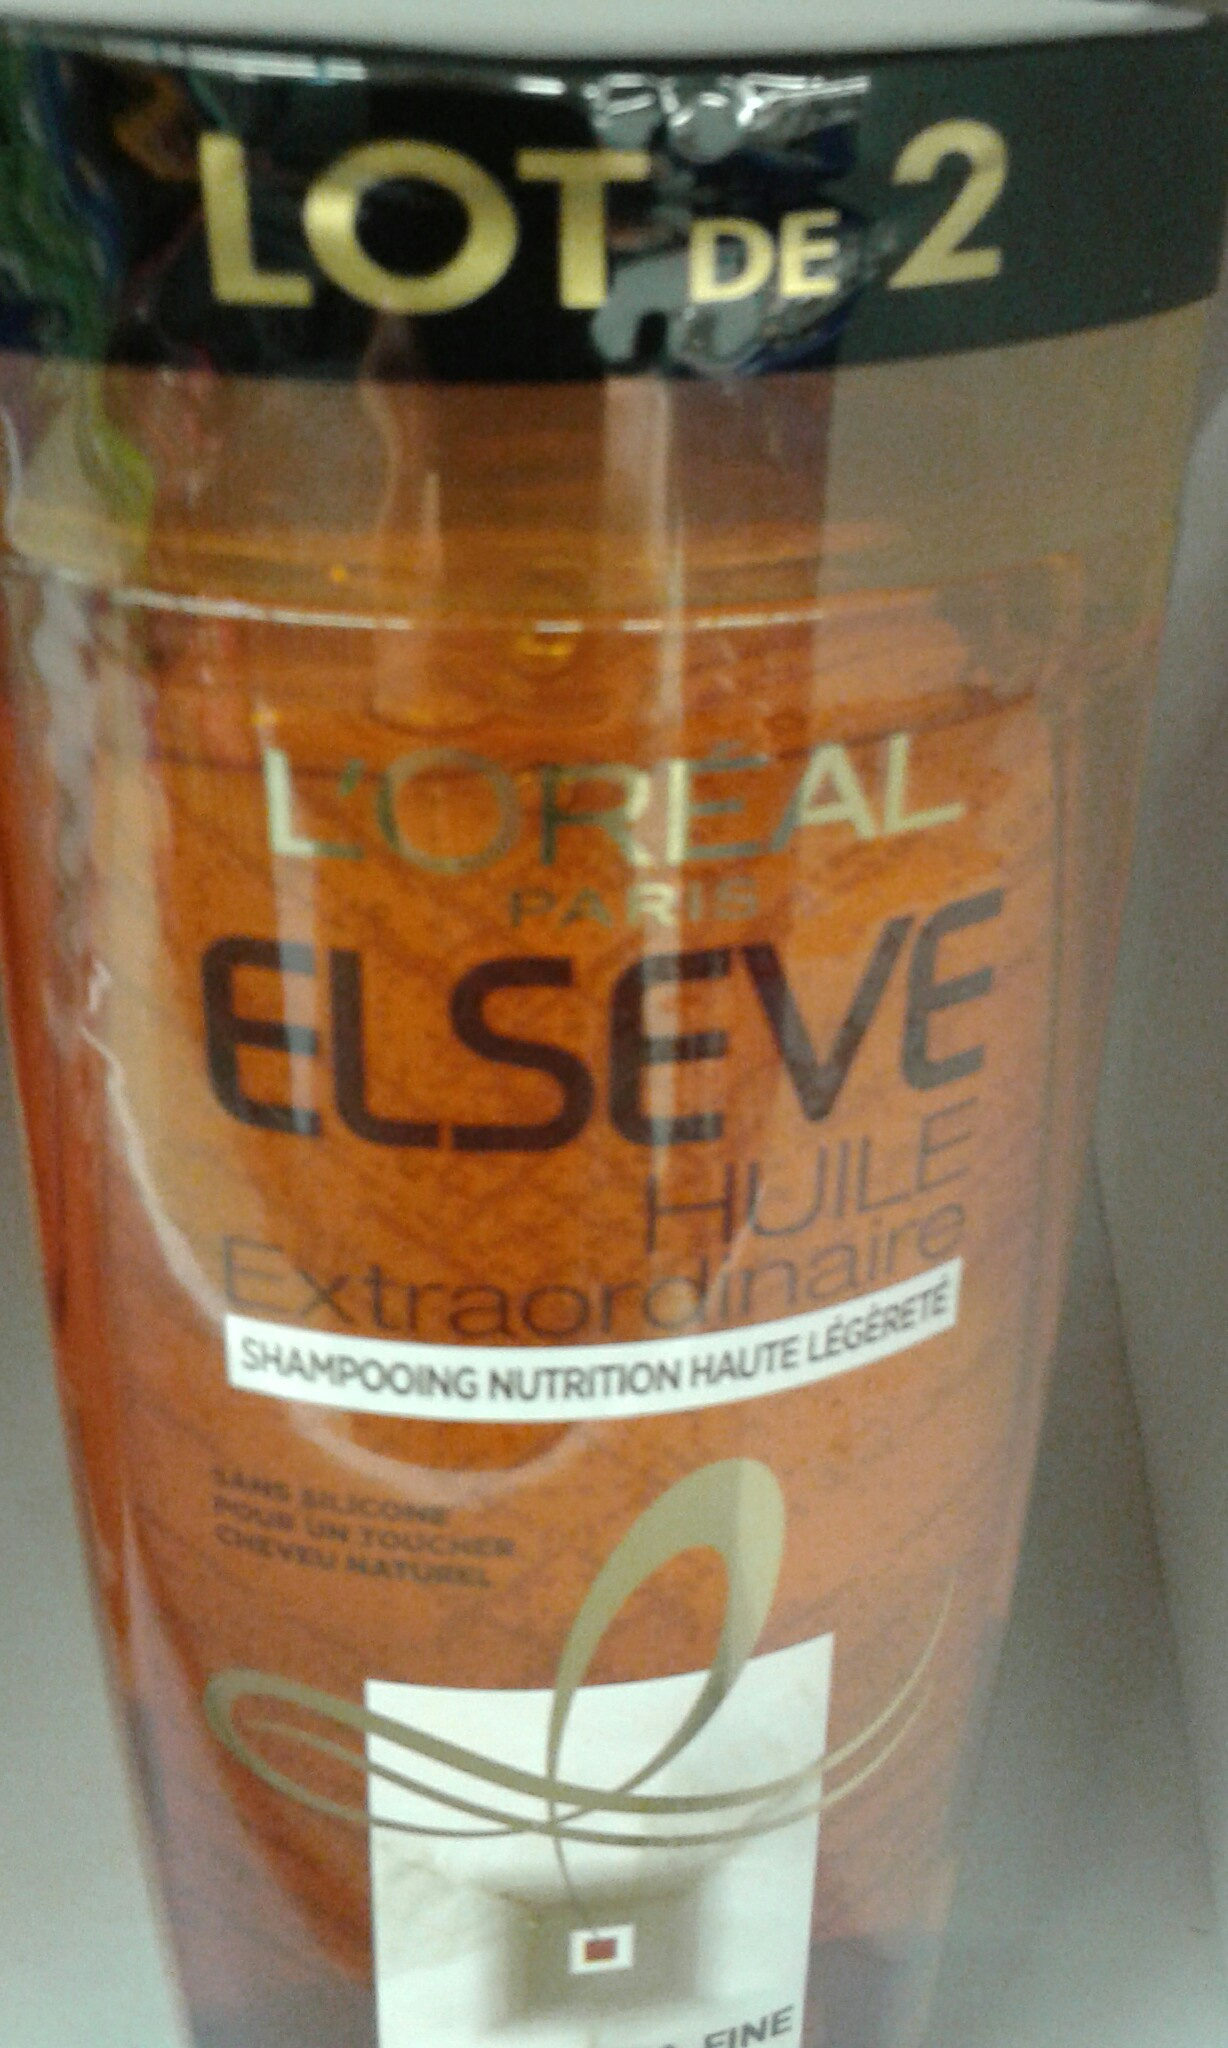 shampooing nutrition légère - Produkt - fr